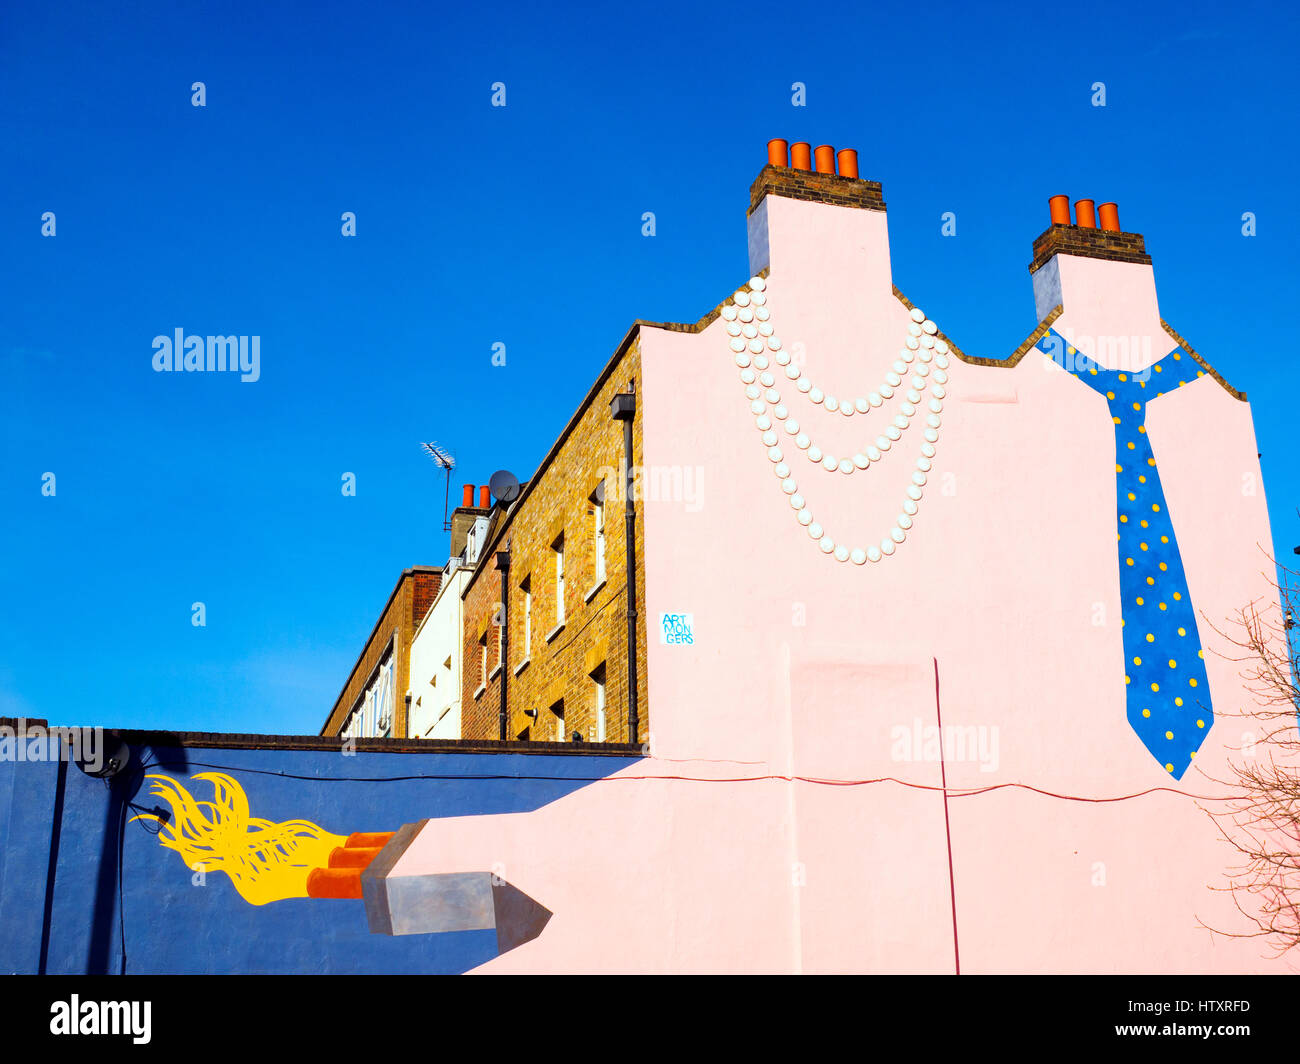 Peinture murale ornant le mur pignon d'une terrasse victorienne. Son et le sien est le travail de Patricio Forrester de Londres du sud société d'art public Artmongers - Londres, Angleterre Banque D'Images